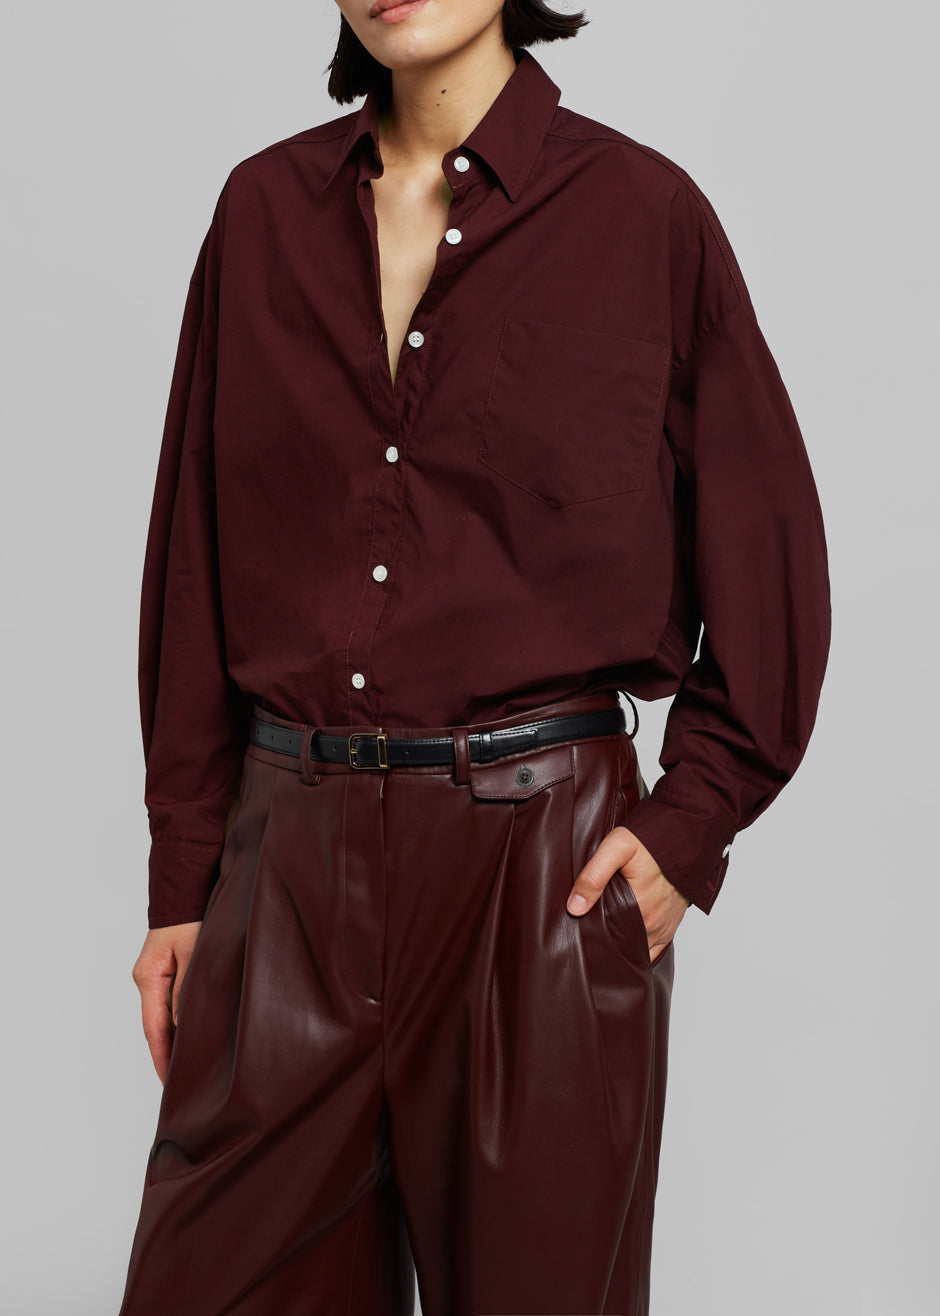 Soho Maroon Leather Pants Women - Jeyka Leather